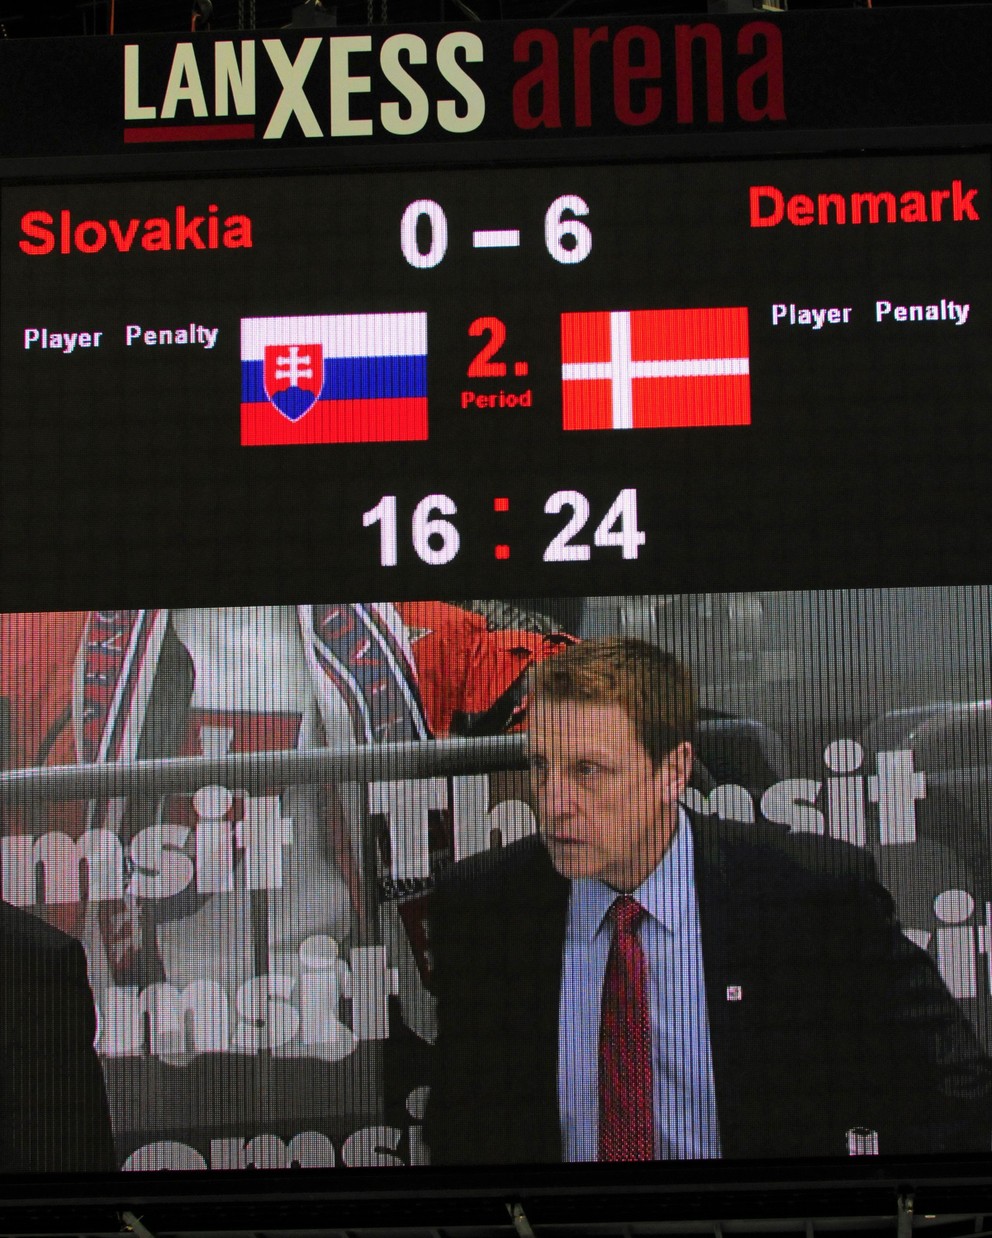 Pamätný výsledok pre obe krajiny. Pre Slovensko veľmi negatívny, Dáni oslavovali.